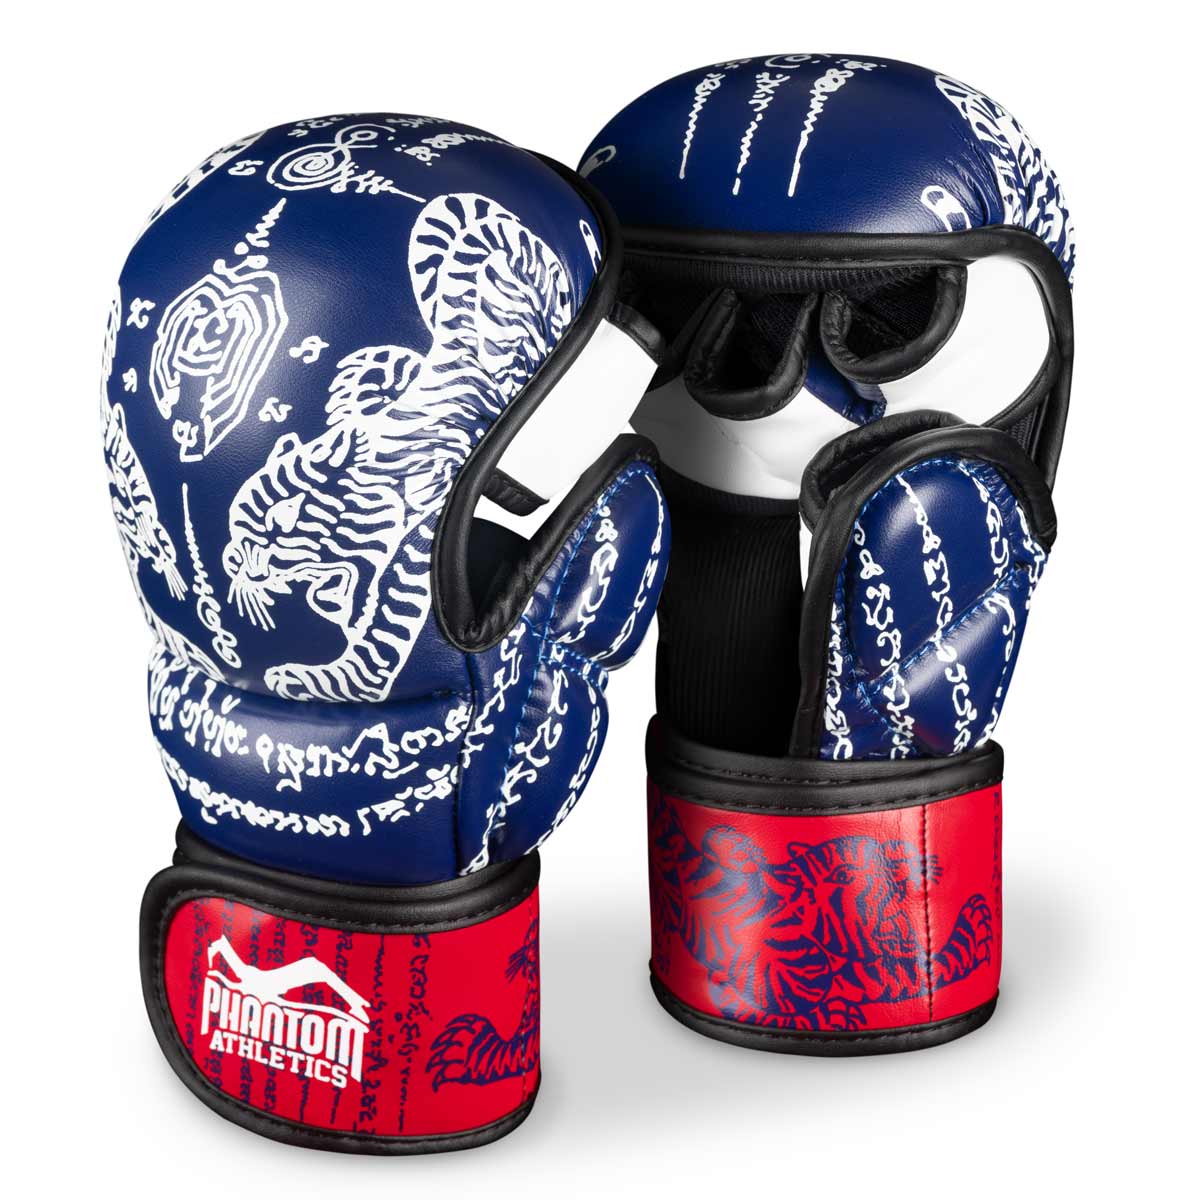 Guantes Phantom Muay Thai para sparring, competición y entrenamiento de boxeo tailandés y MMA. Con el diseño tradicional Sak Yant y el color azul/rojo.